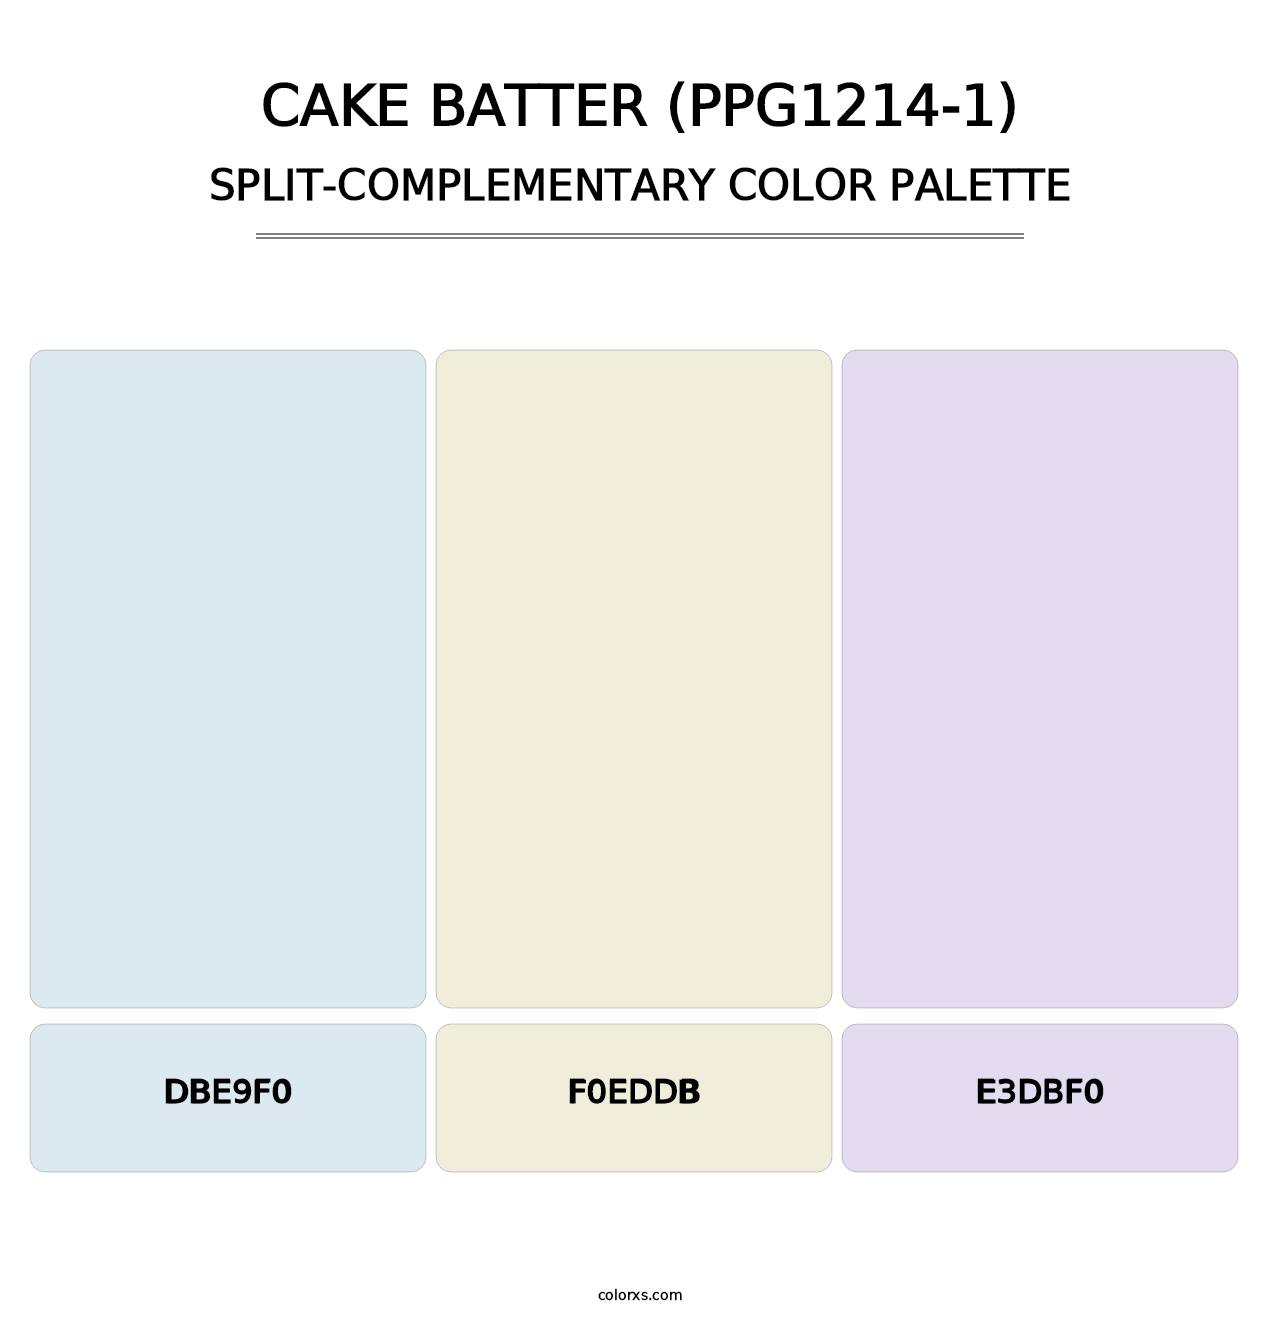 Cake Batter (PPG1214-1) - Split-Complementary Color Palette